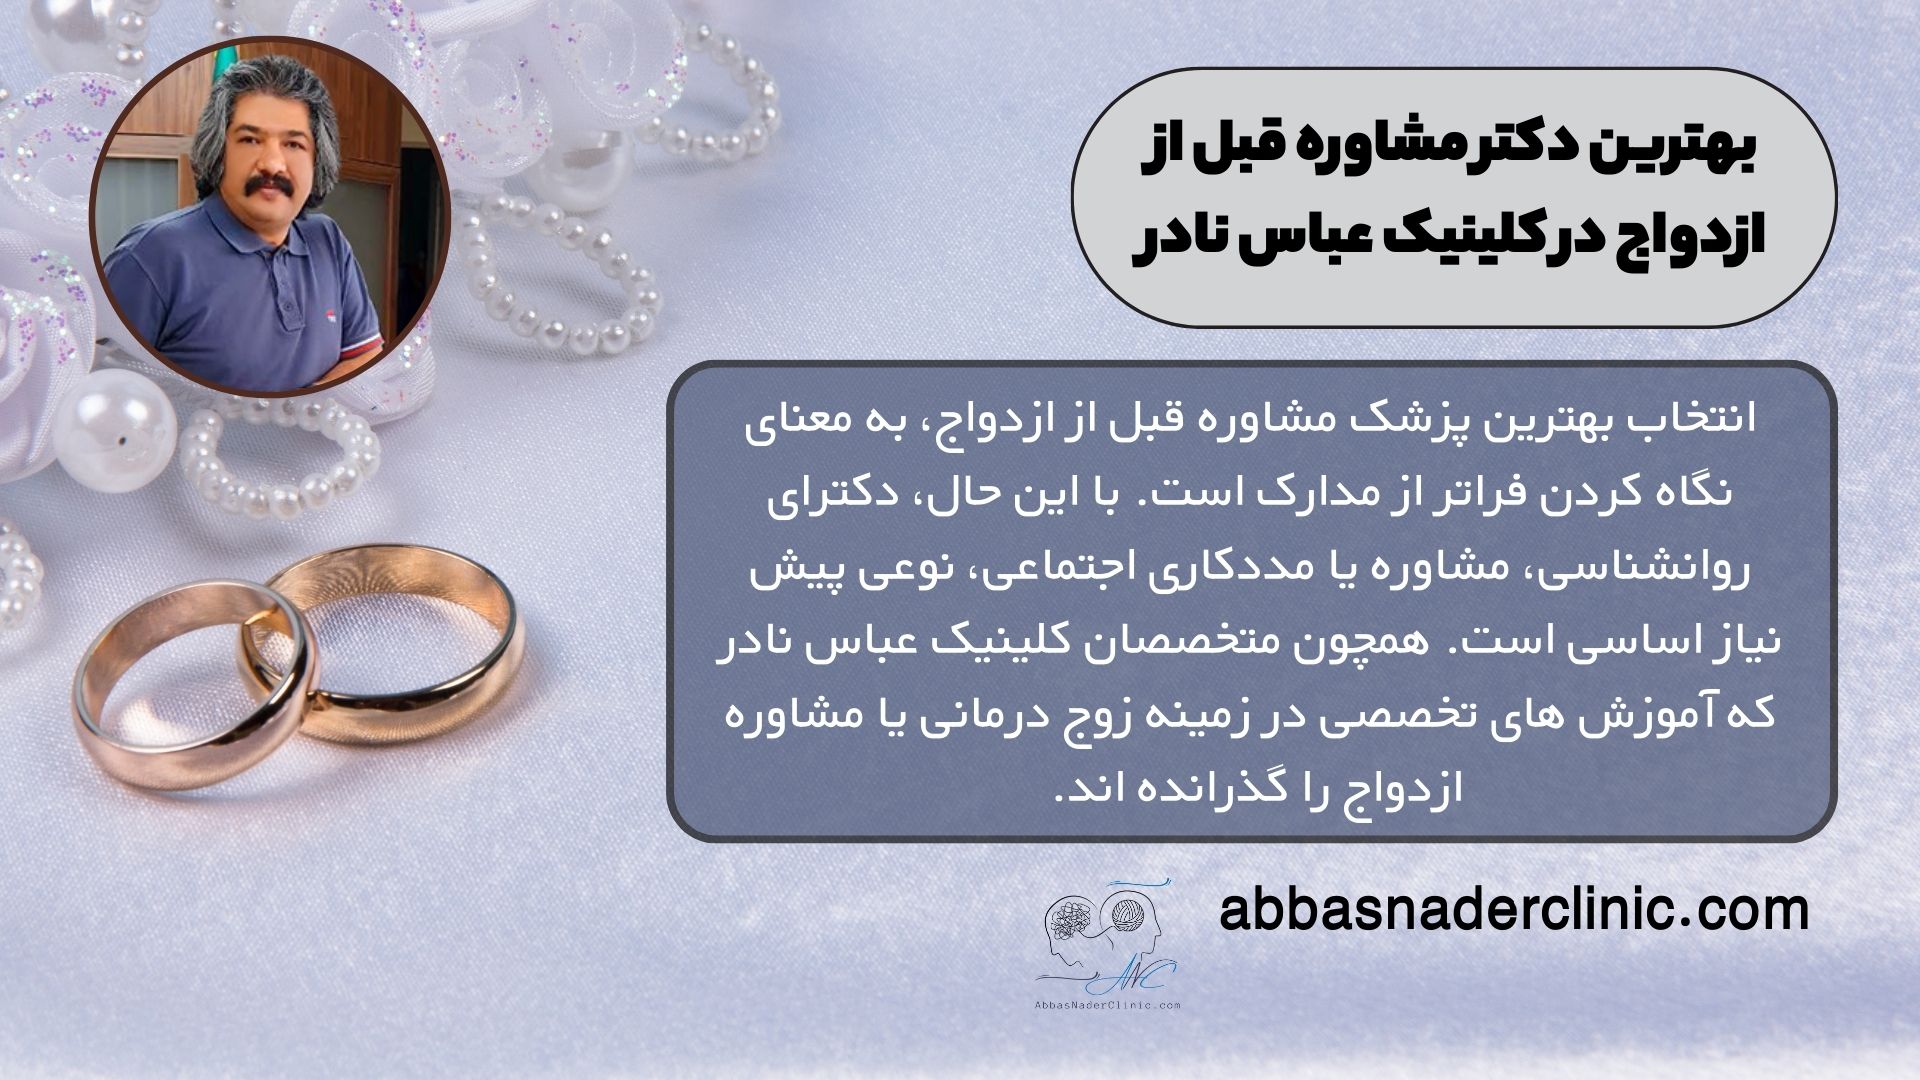 بهترین دکتر مشاوره قبل از ازدواج در کلینیک عباس نادر